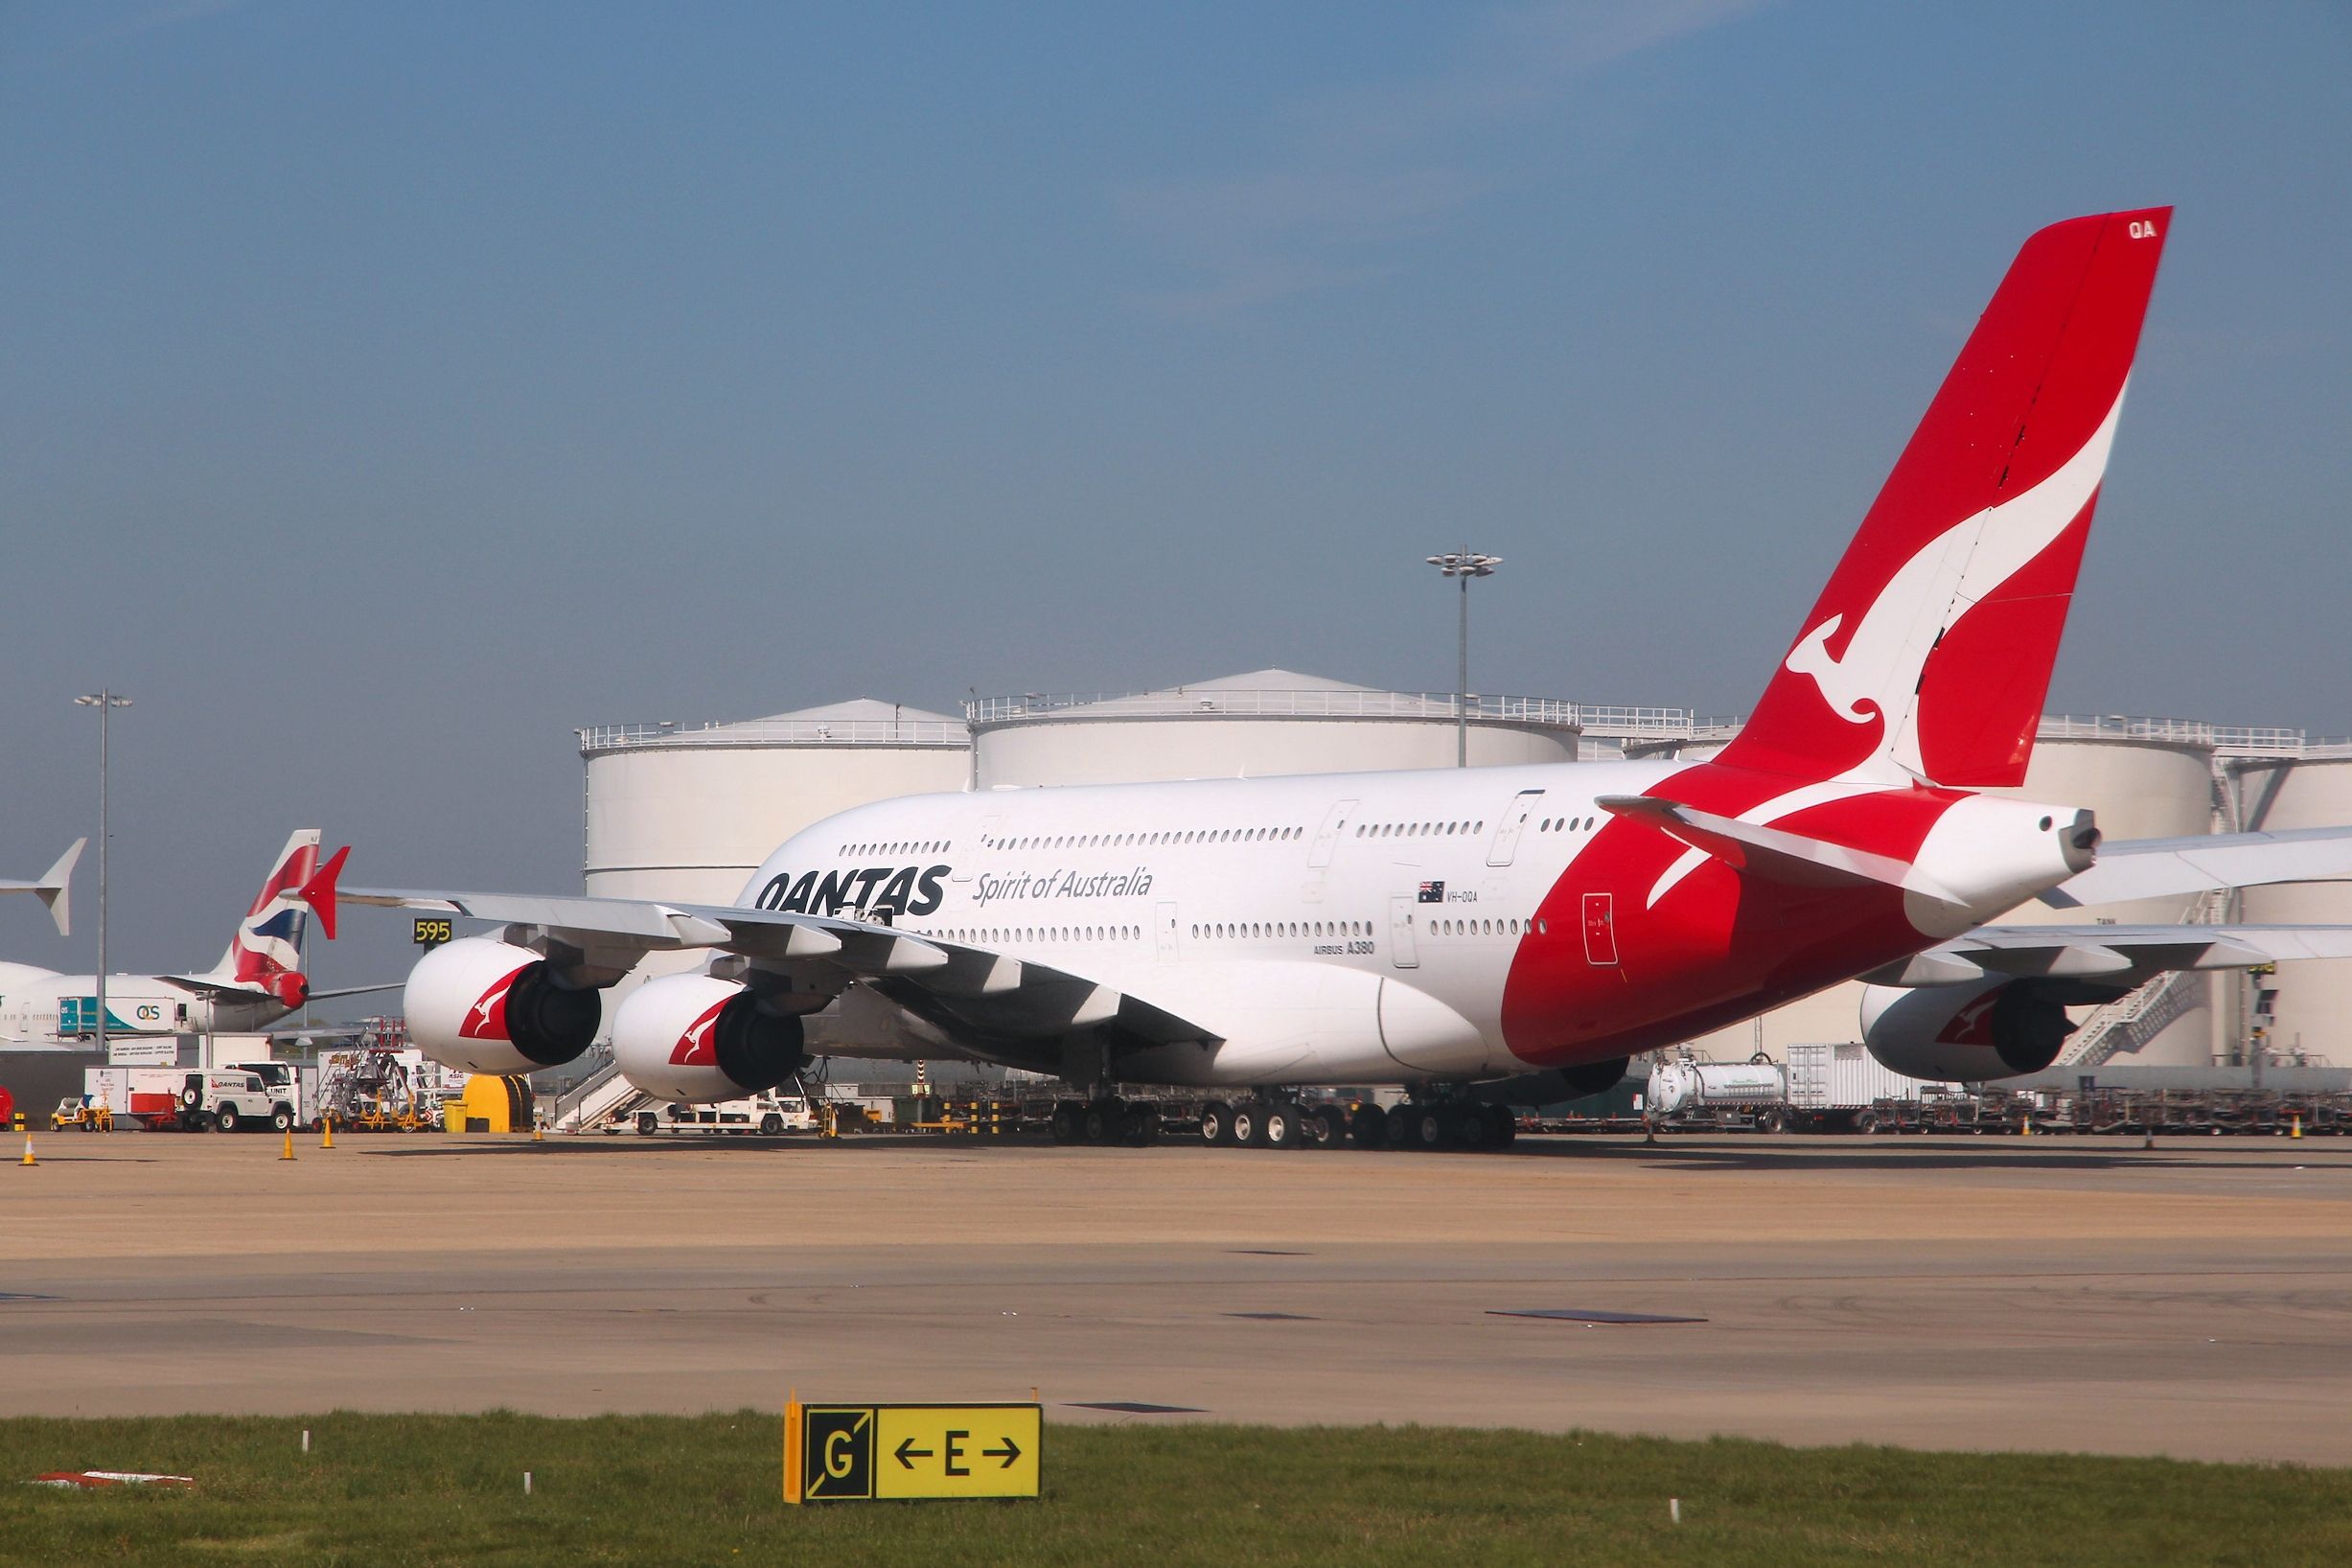 Qantas Airbus A380 at London Heathrow Airport LHR shutterstock_1737540905